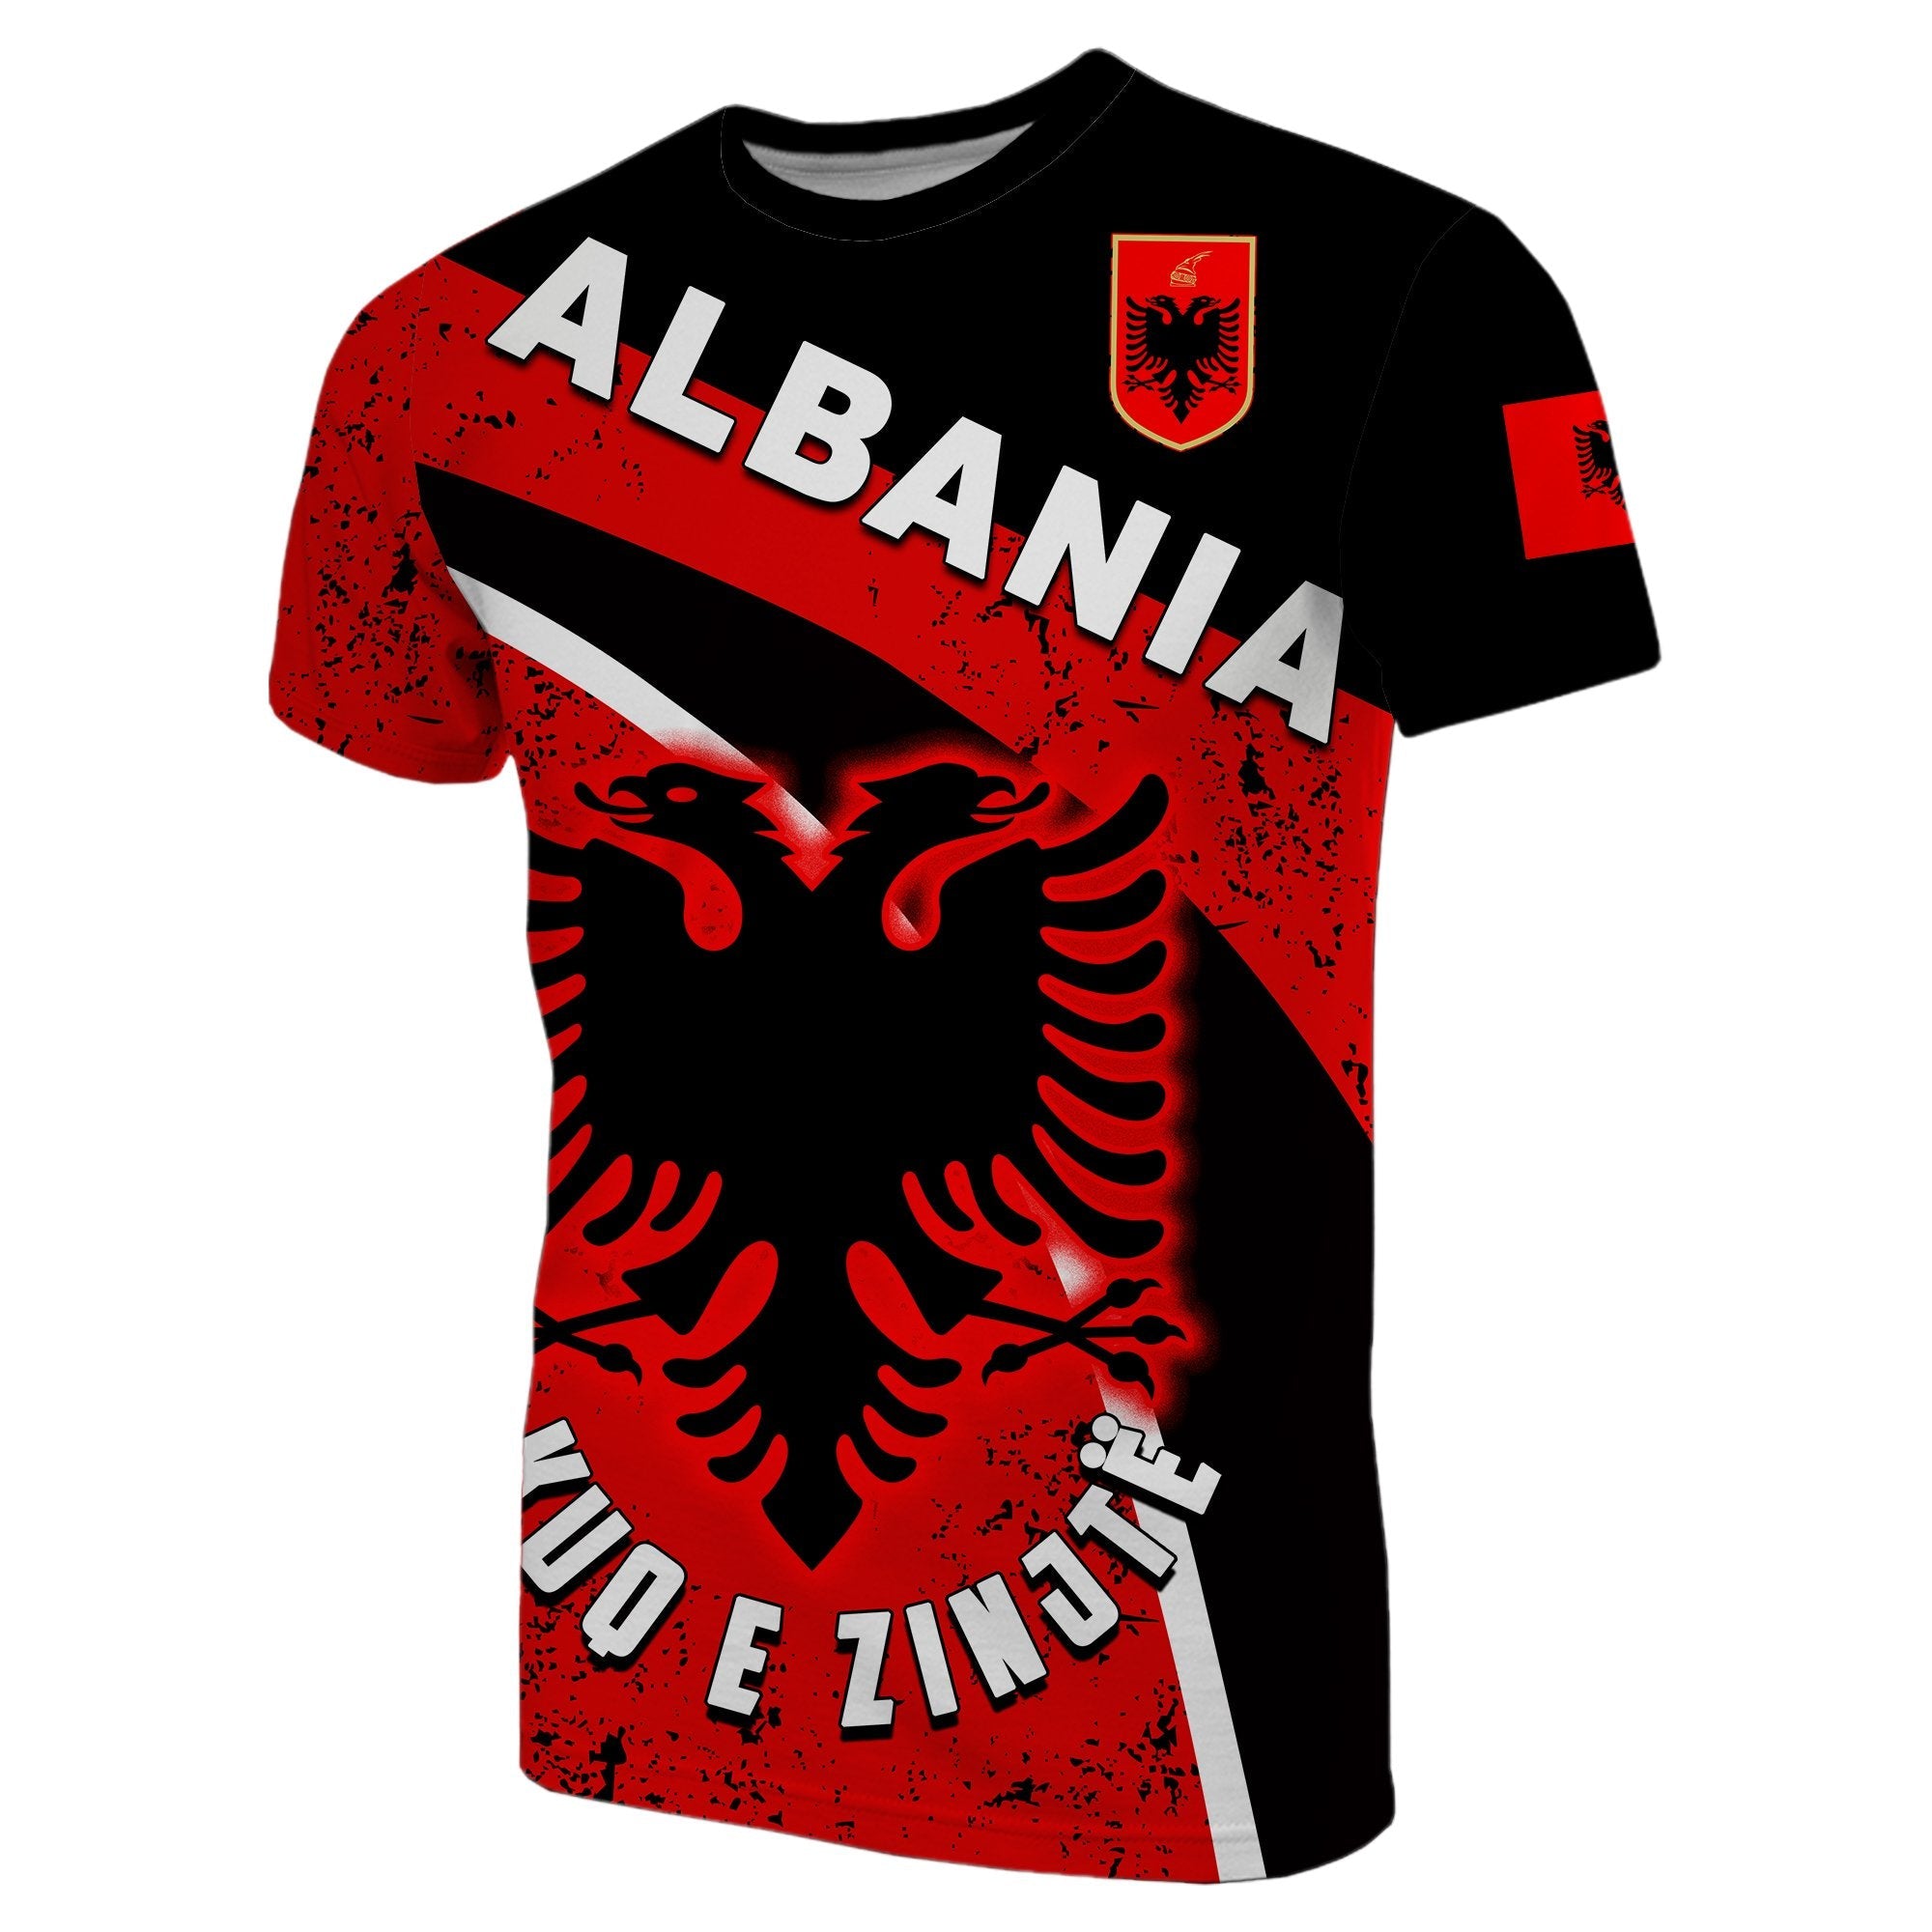 albania-t-shirt-kuq-e-zinjt-football-style